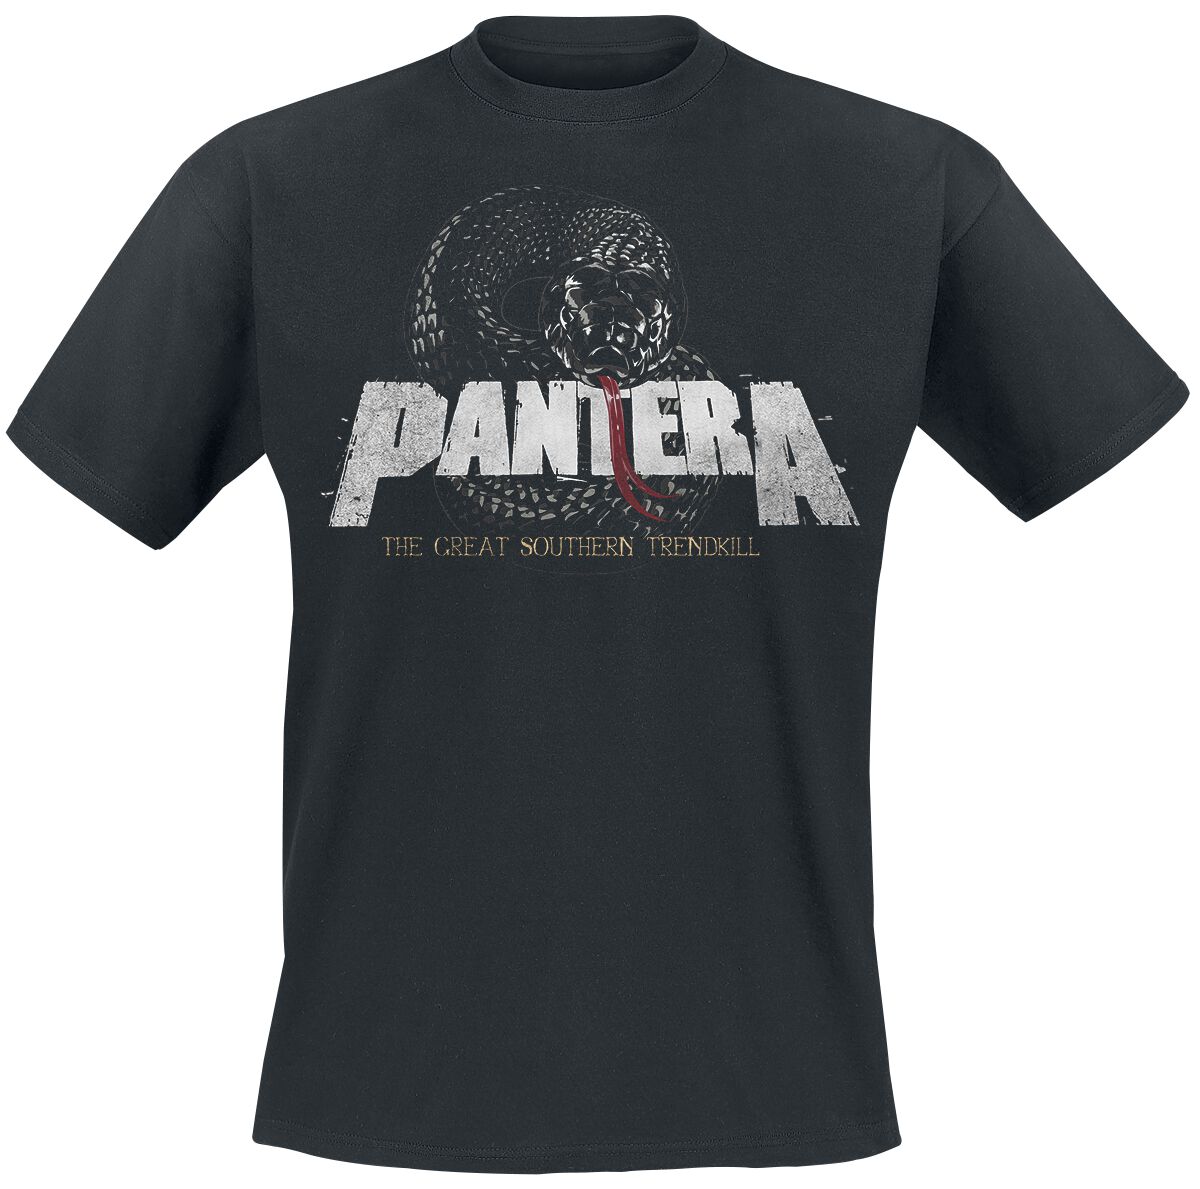 Pantera T-Shirt - Trendkill Snake - S bis 3XL - für Männer - Größe XXL - schwarz  - Lizenziertes Merchandise!